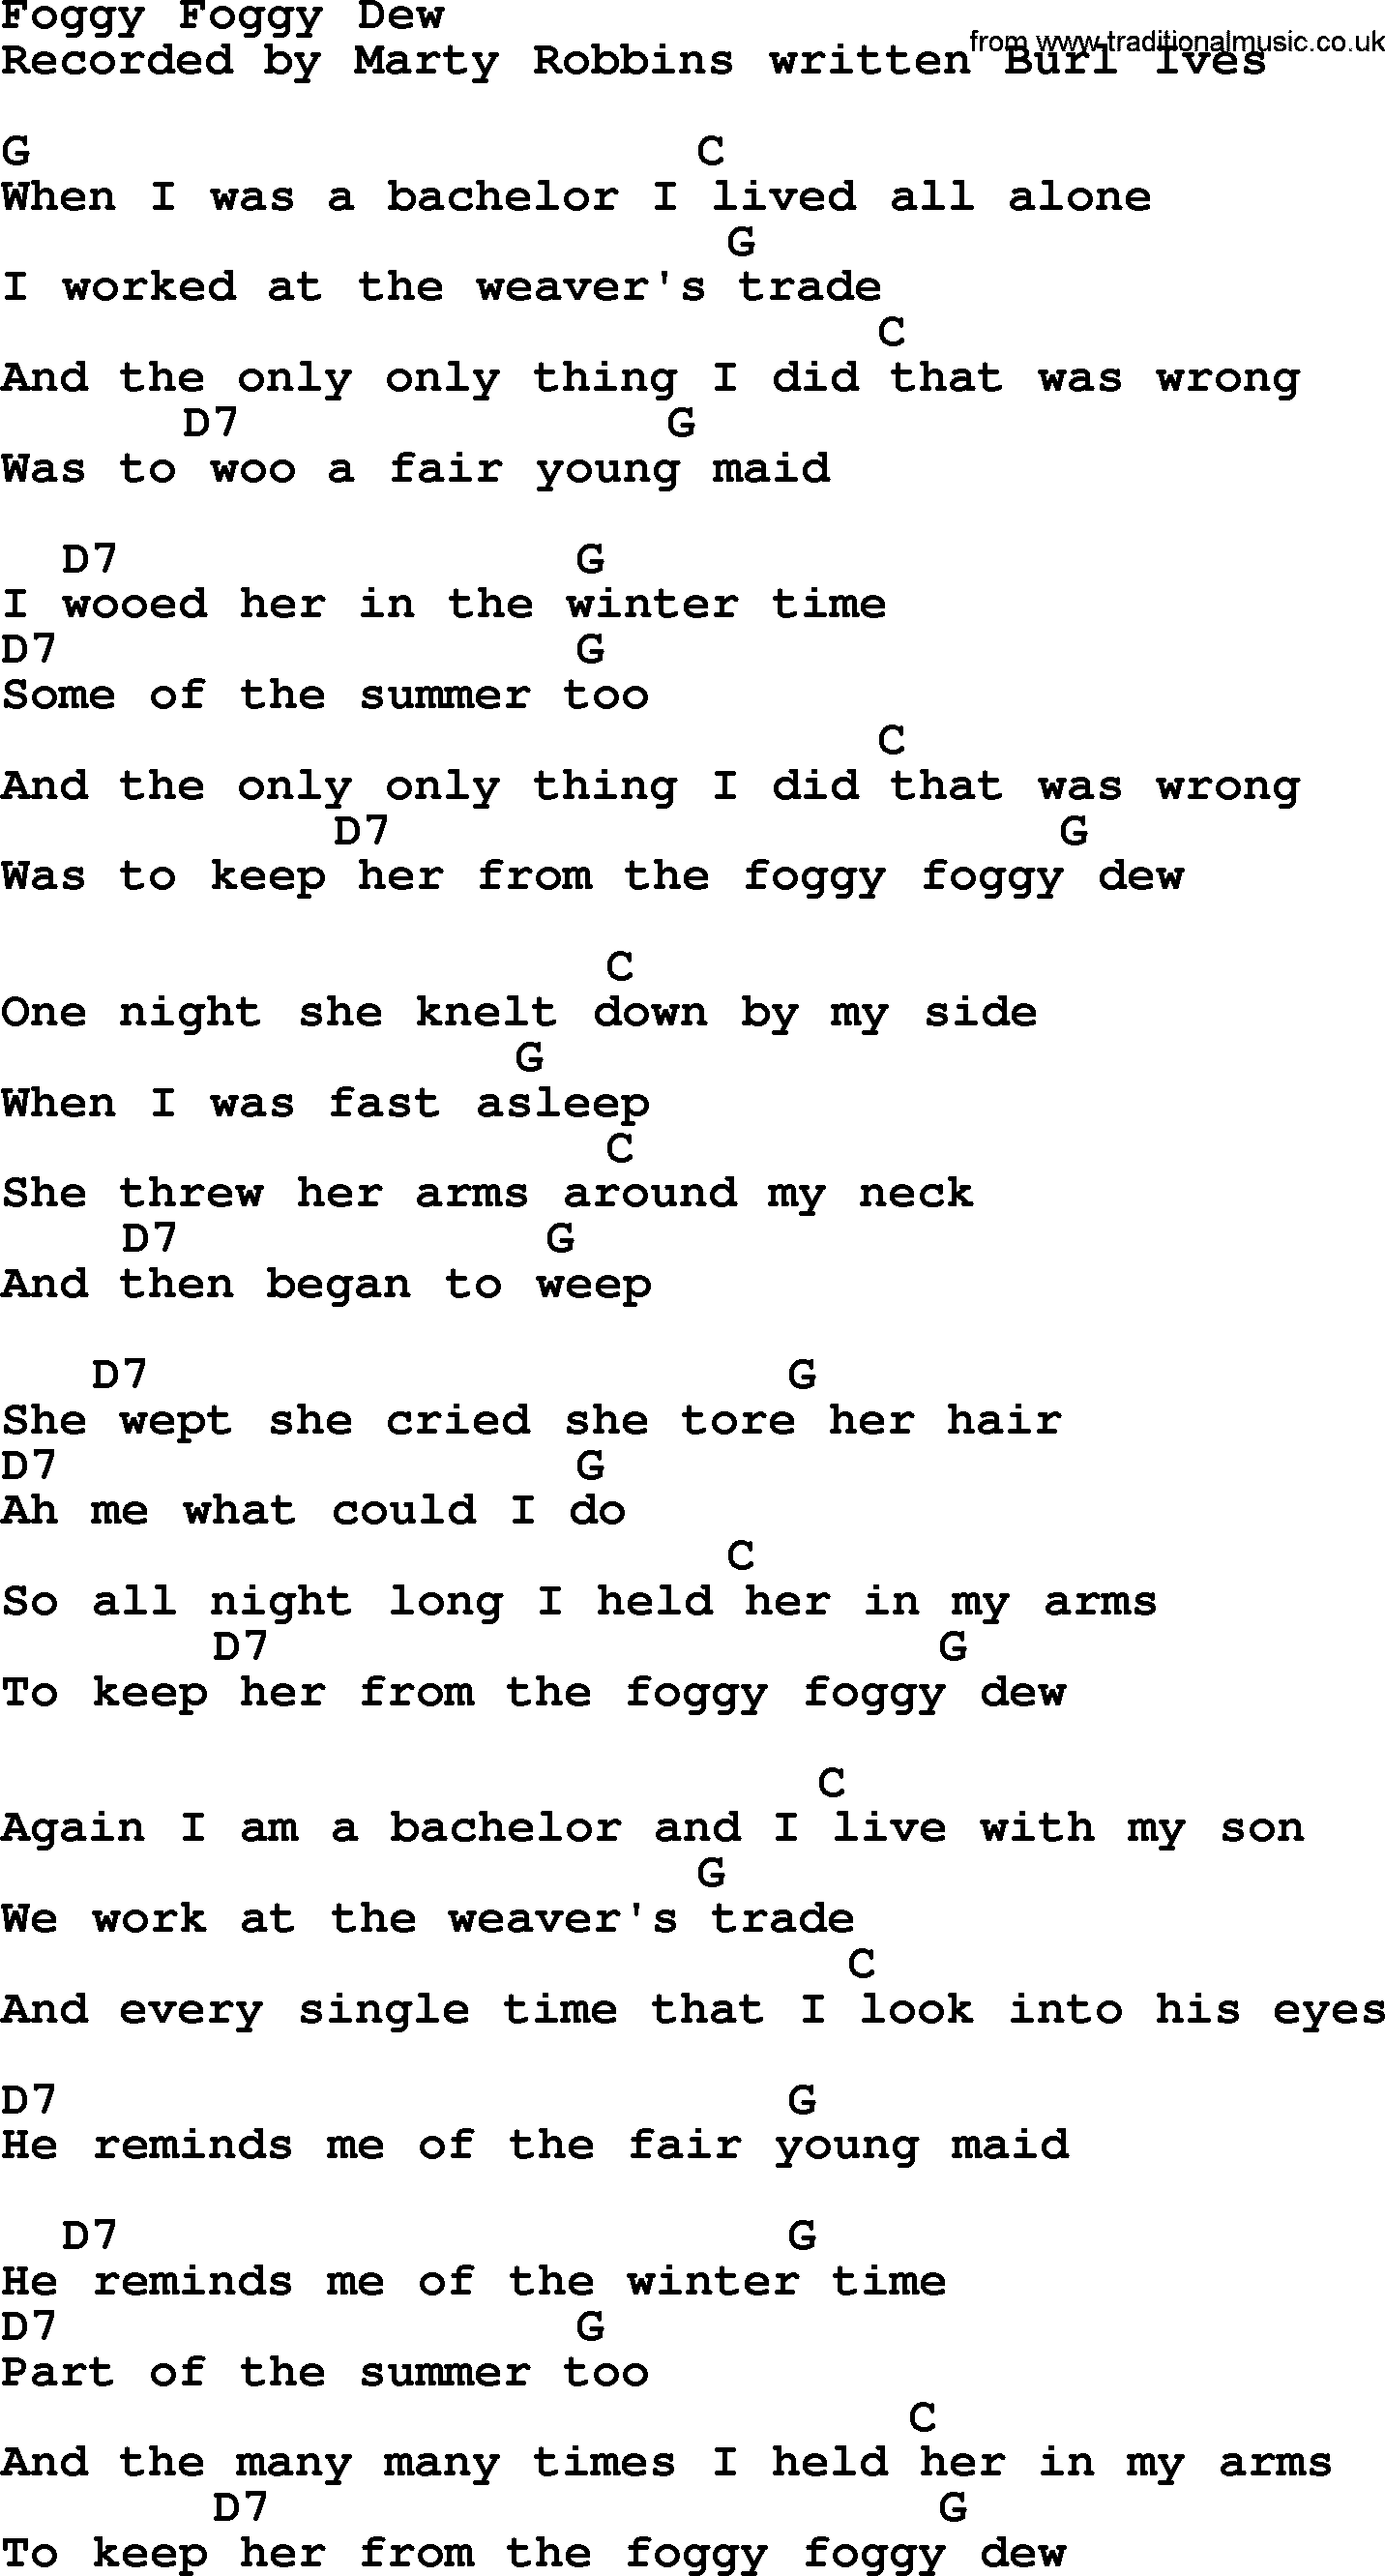 Marty Robbins song: Foggy Foggy Dew, lyrics and chords